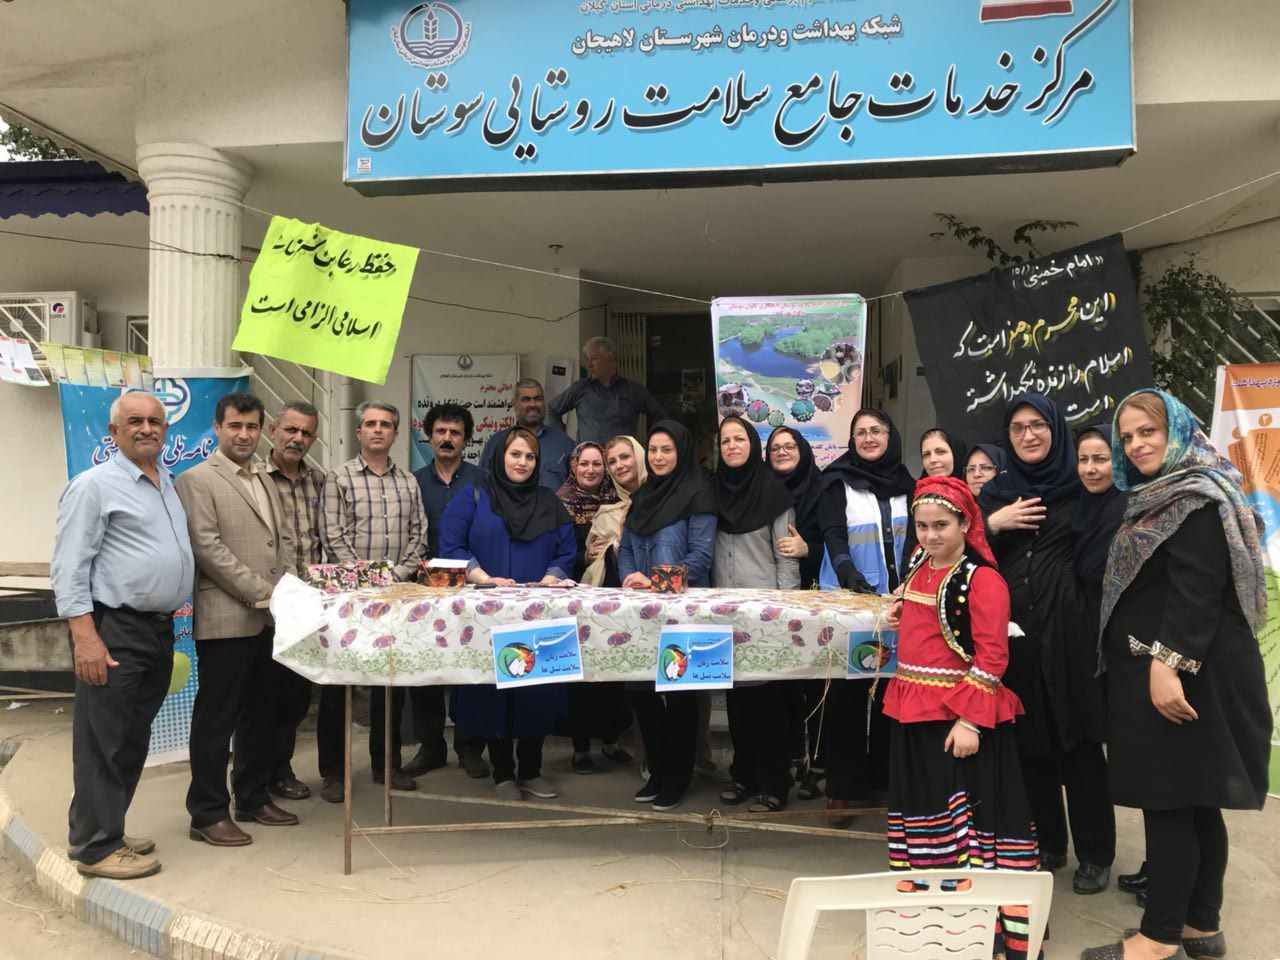 اولین مهرواره ی غذای سالم به مناسبت پایان گلدهی لاله های آبی تالاب سوستان